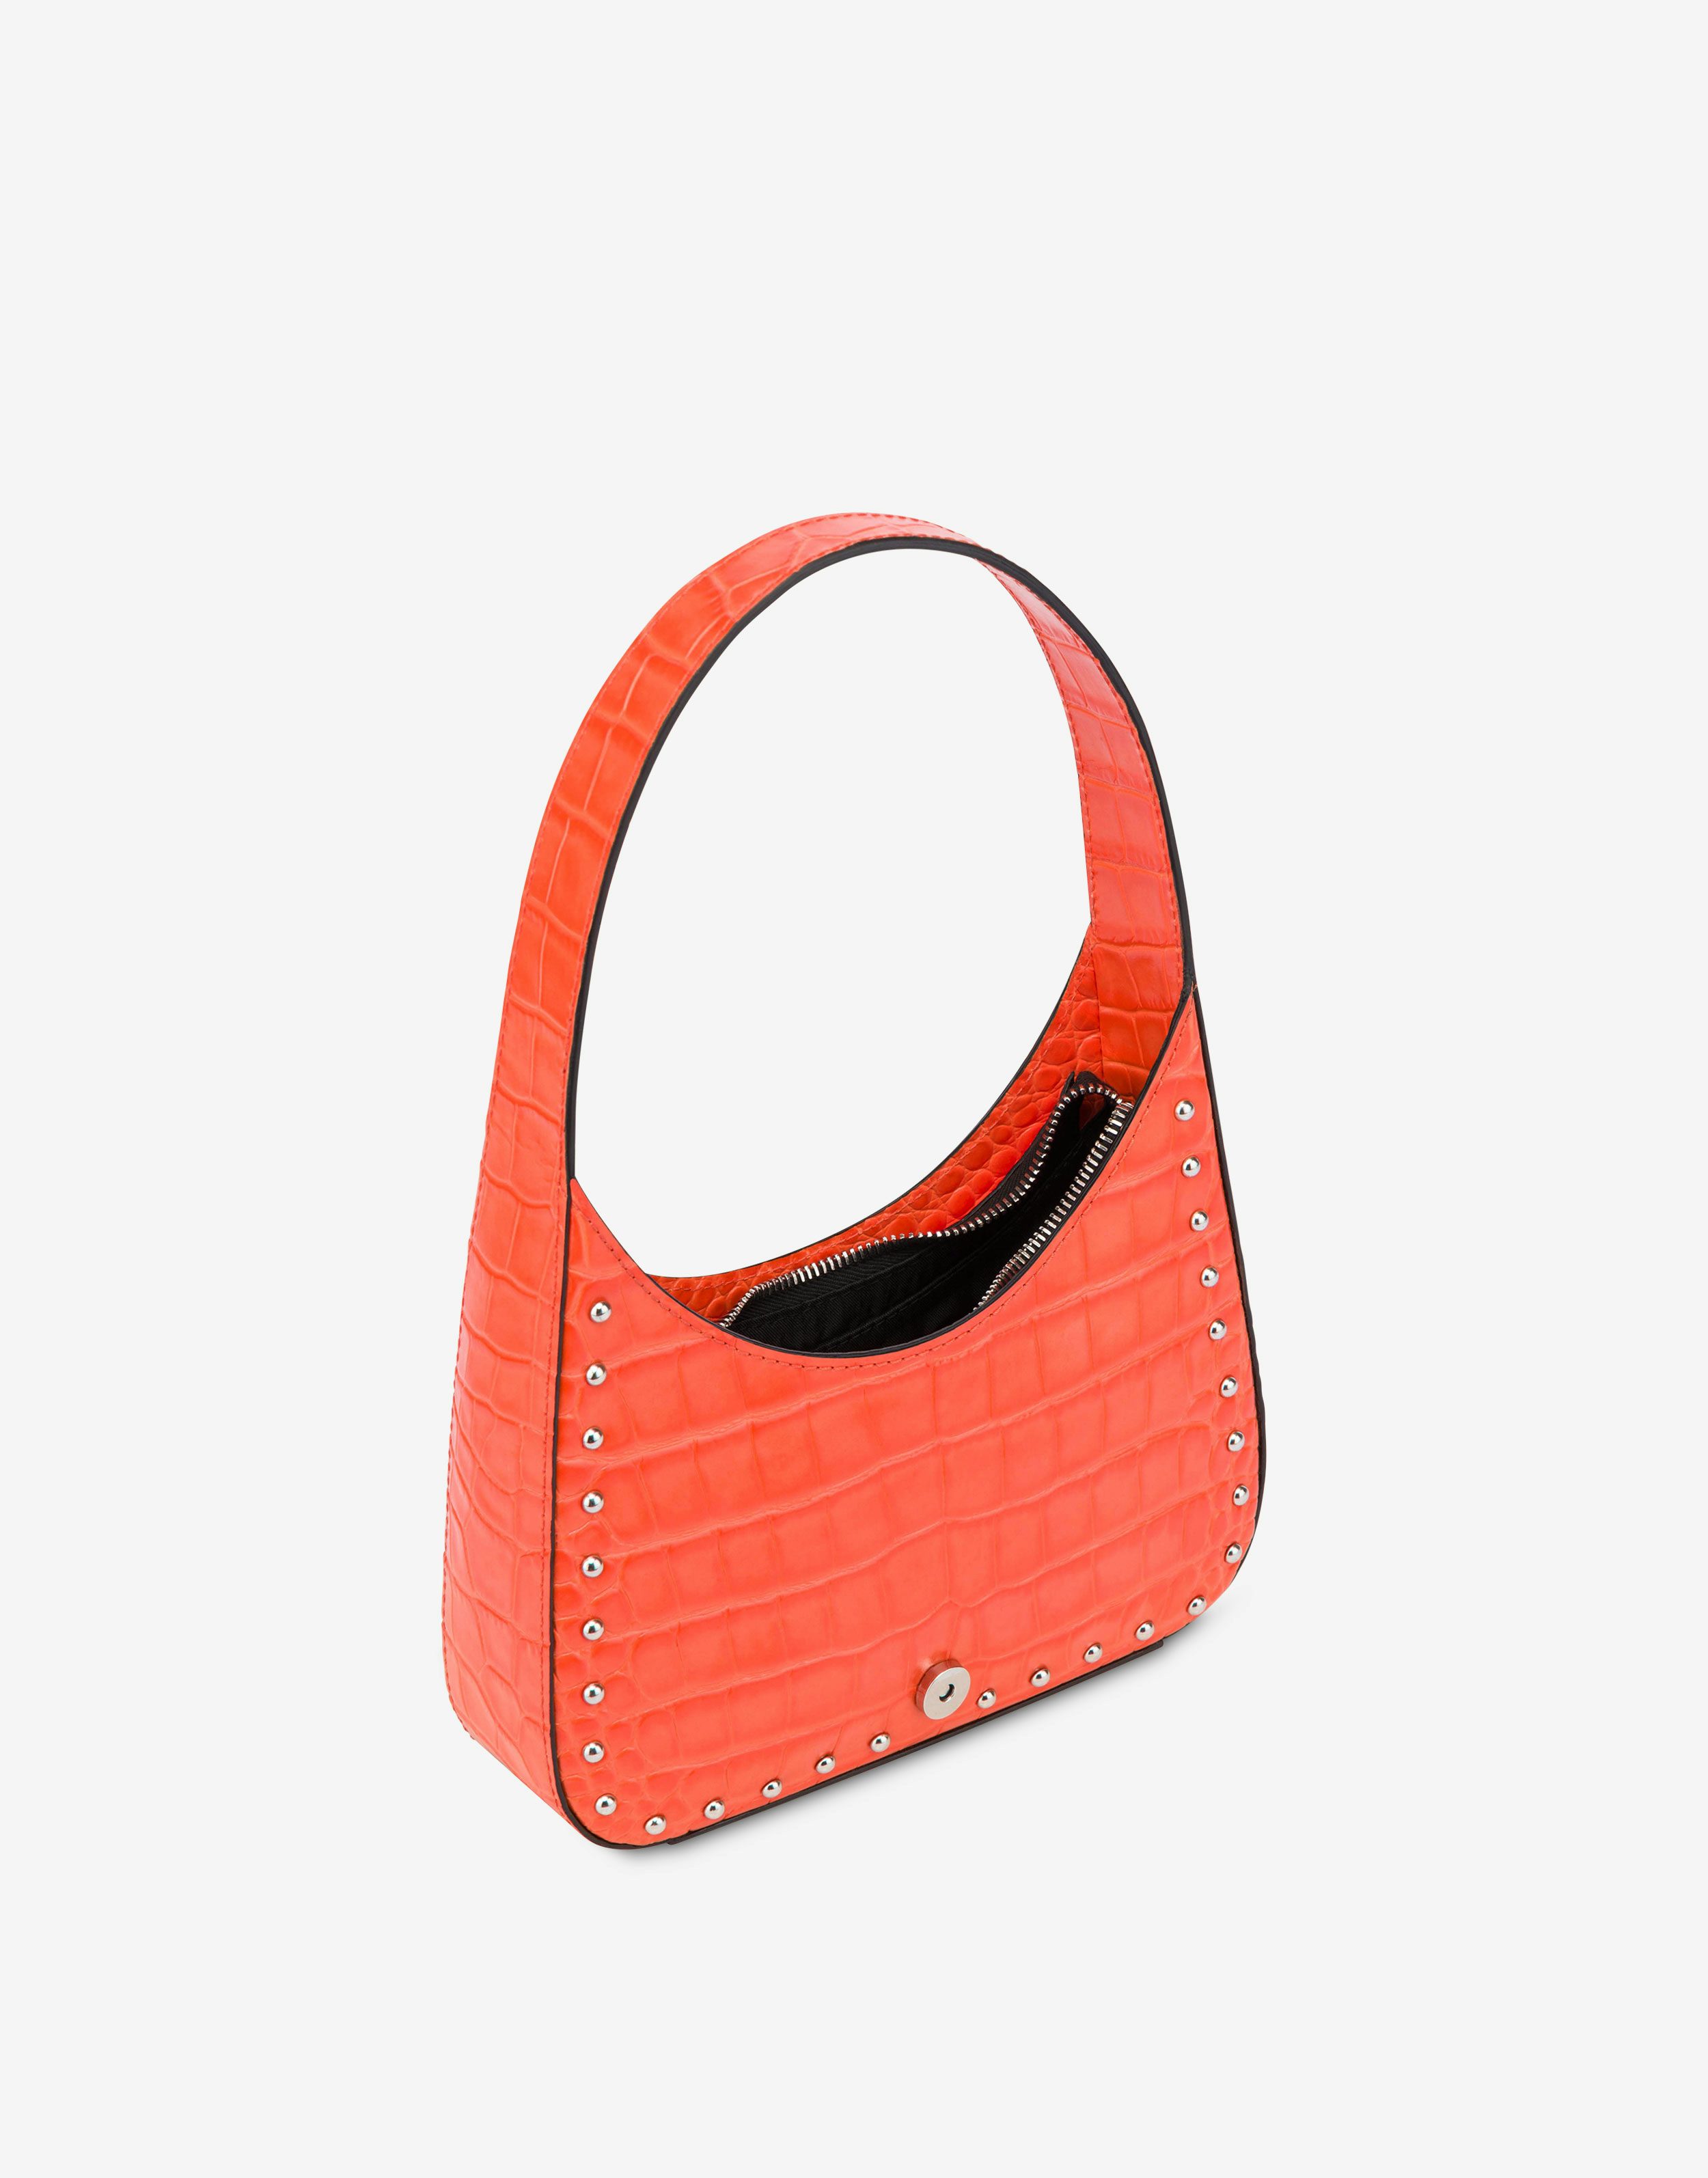 Maxi Buckle crocodile-print handbag 1